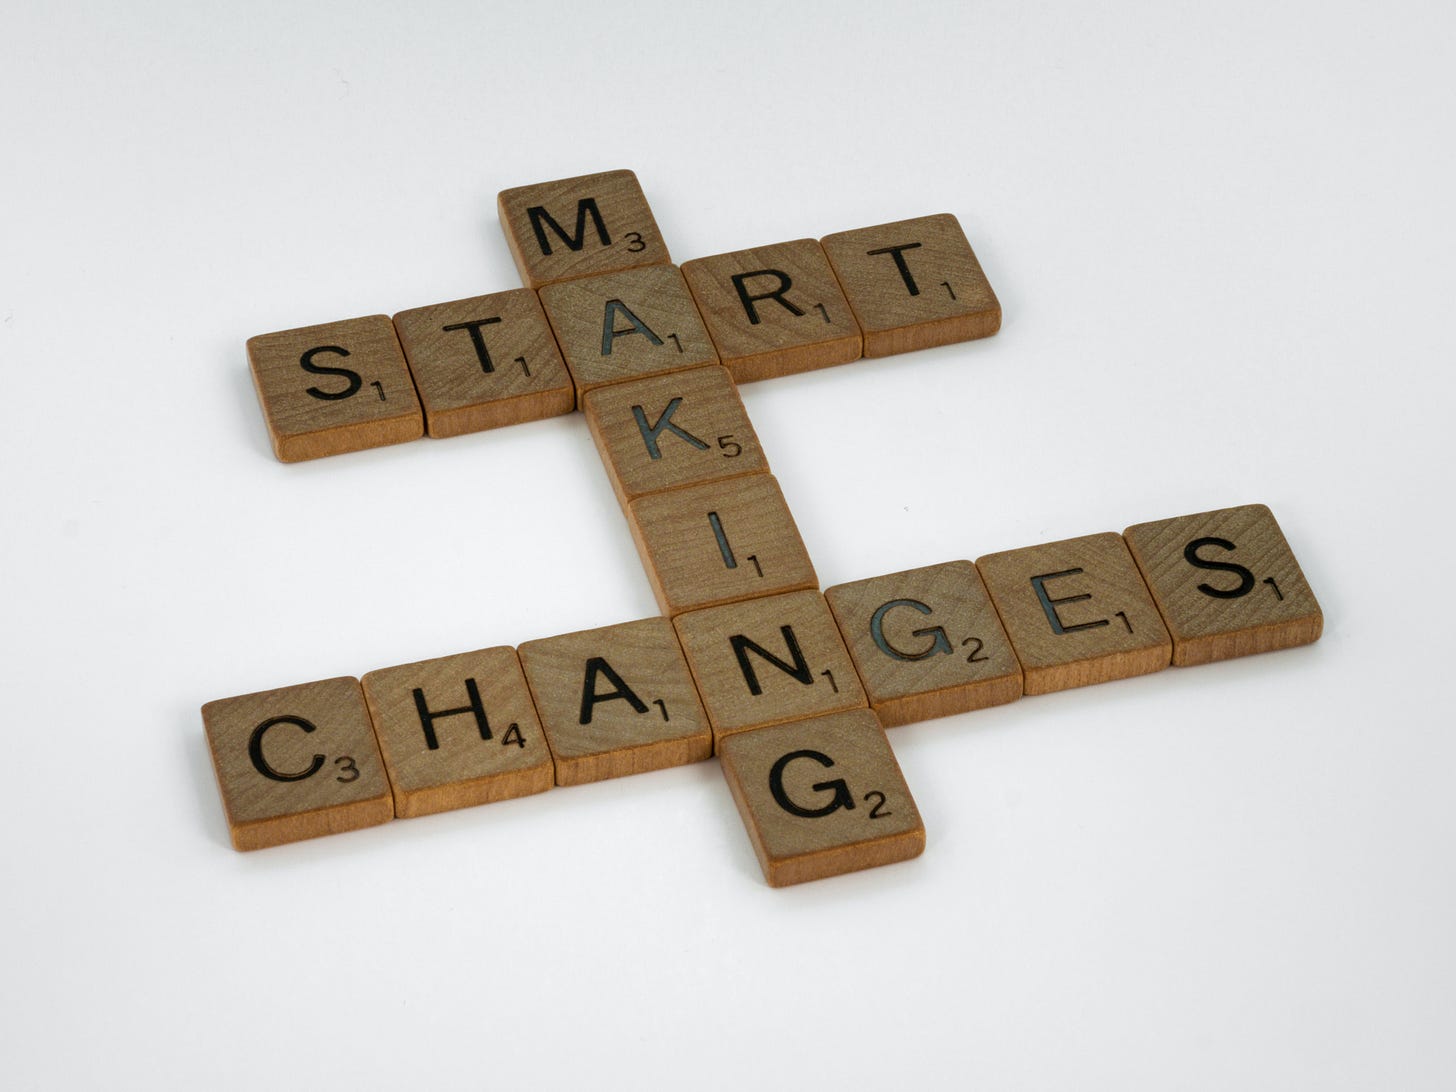 Game tiles reading "start making changes"